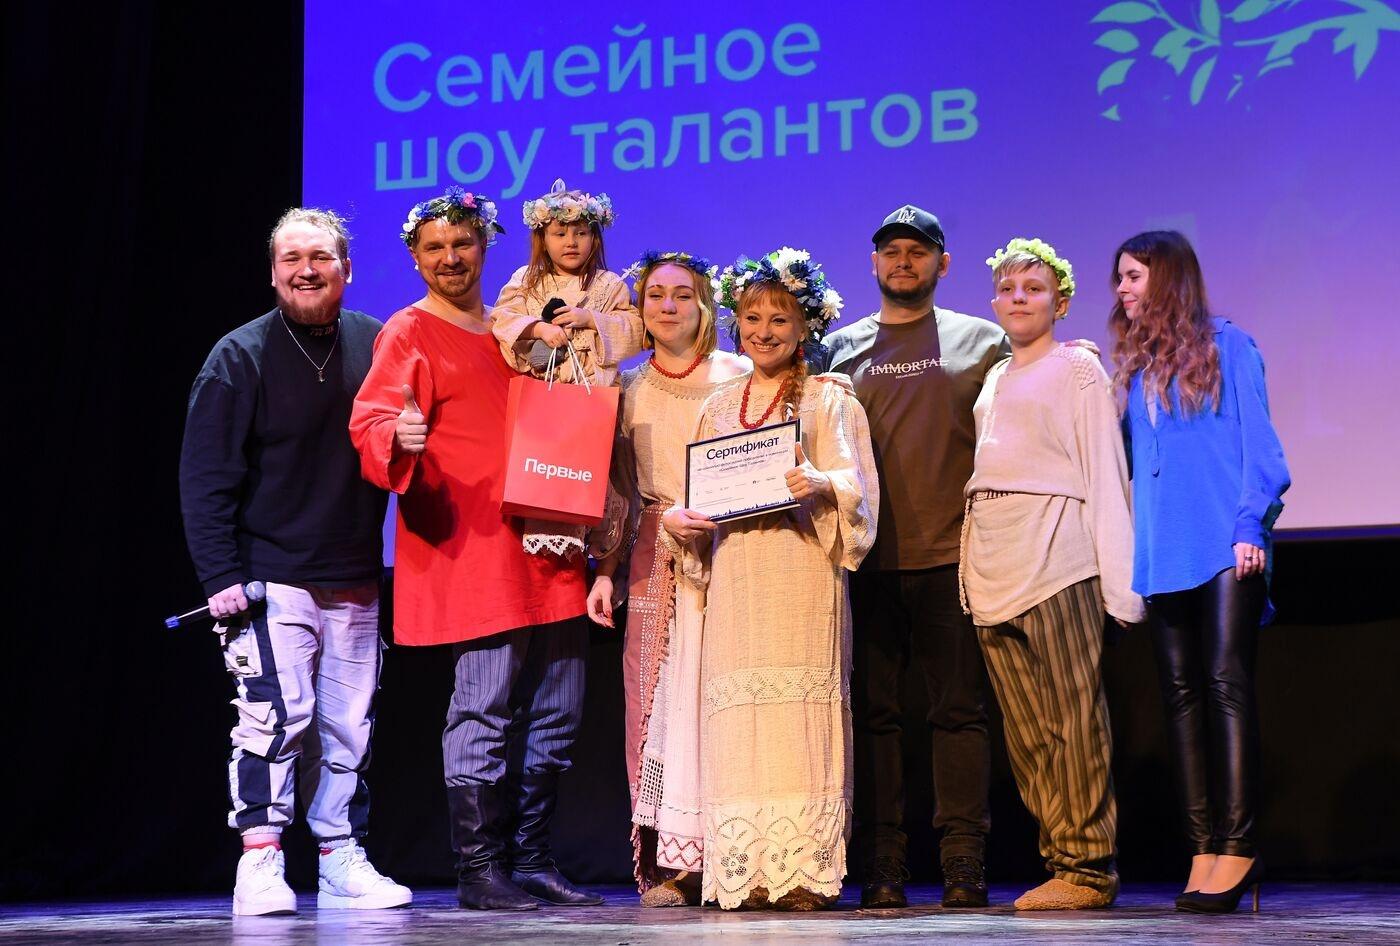 Семья из Орловской области вошла в число победителей «Семейного шоу талантов»